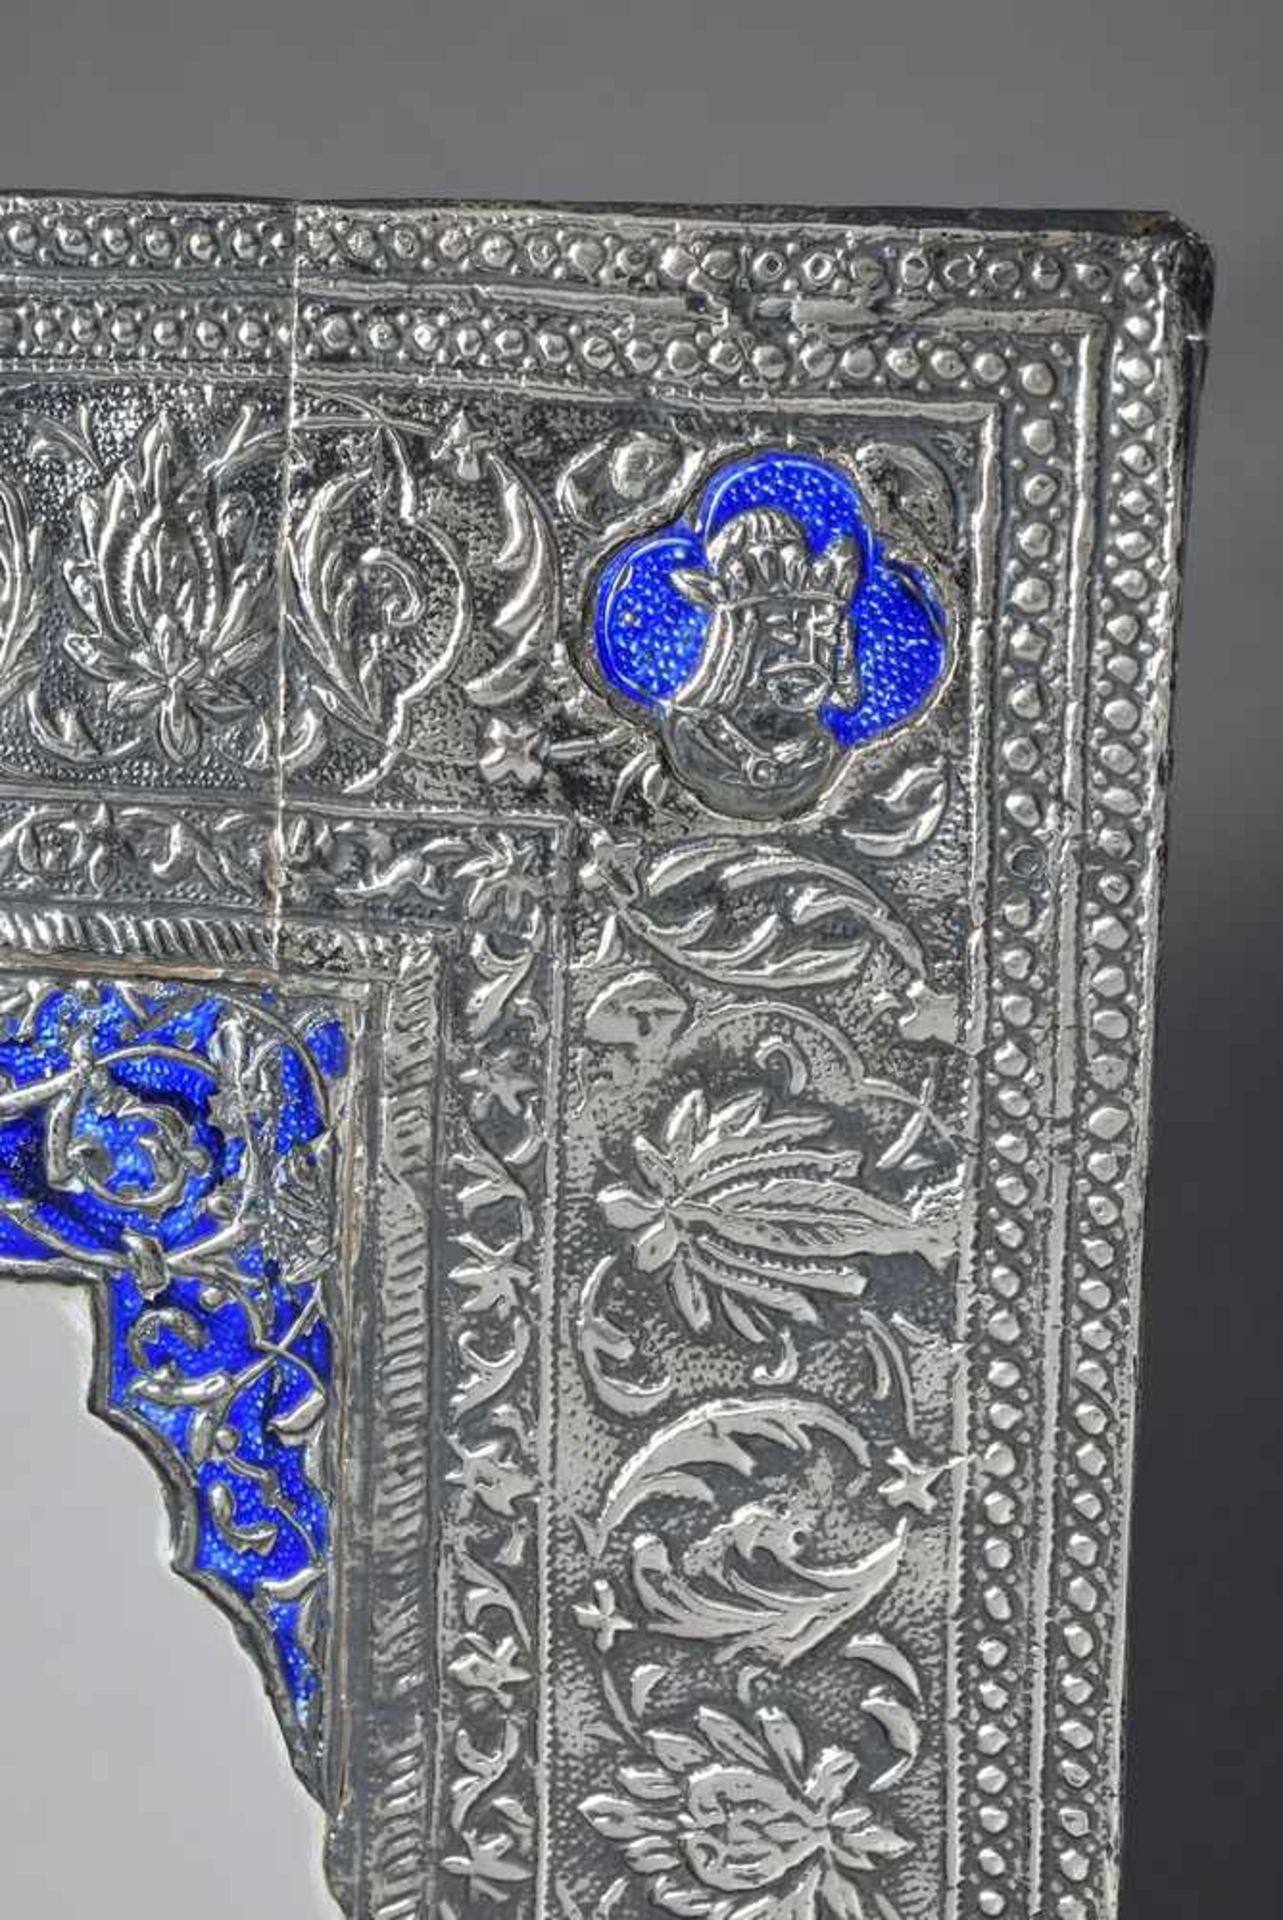 Persischer Spiegel mit emaillierter und ornamental getriebener Silberblech Rahmung, 31x22cm, - Bild 2 aus 3